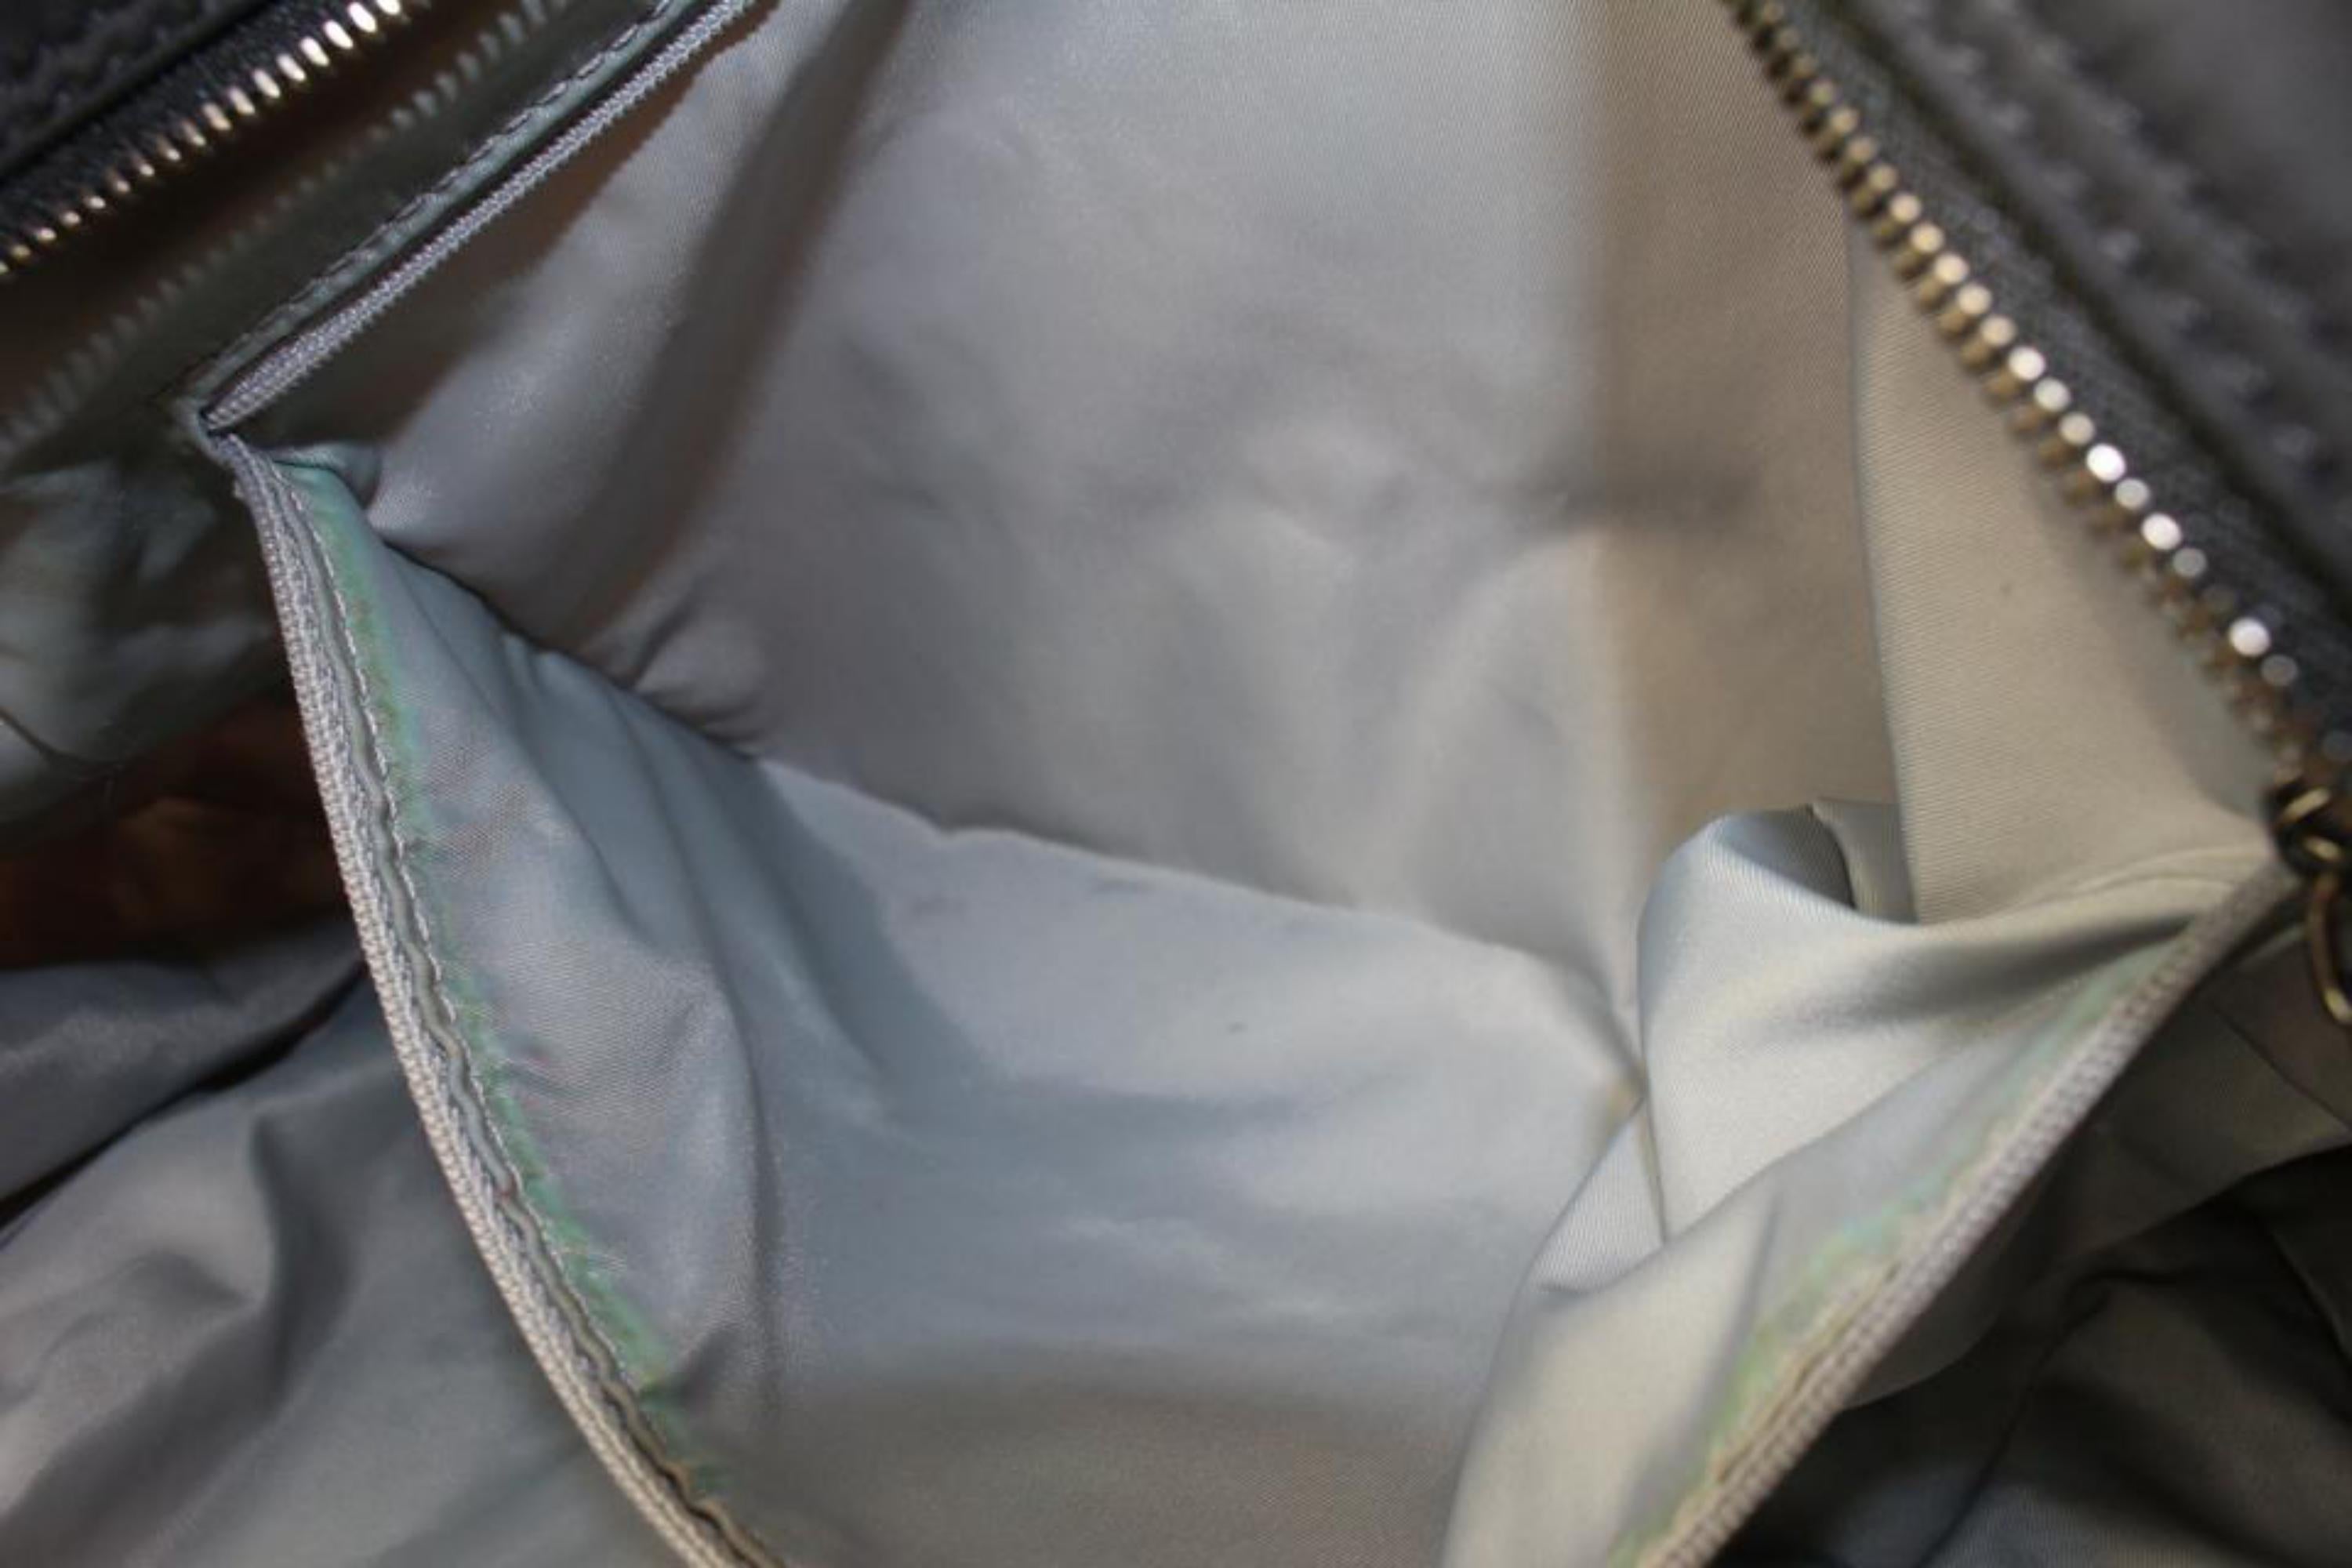 Burberry Pink Nova Check Shopper Tote Bag 928bur79 For Sale 6